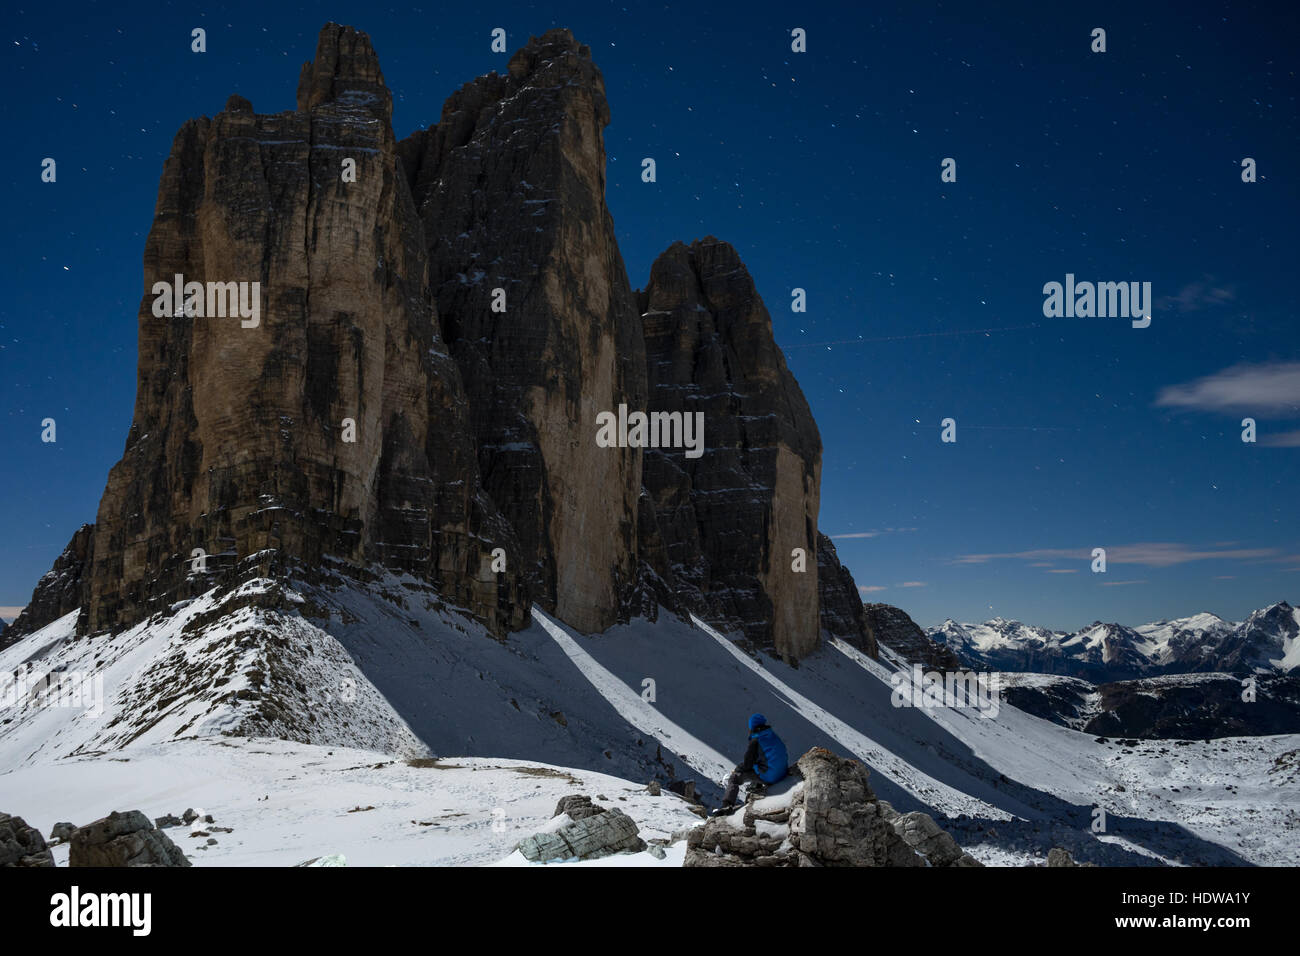 L'homme assis à Tre Cime di Lavaredo ou Drei Zinnen dans la nuit avec la lune, dans les Dolomites de Belluno,,Südtirol,Alto Adige - Italie Banque D'Images